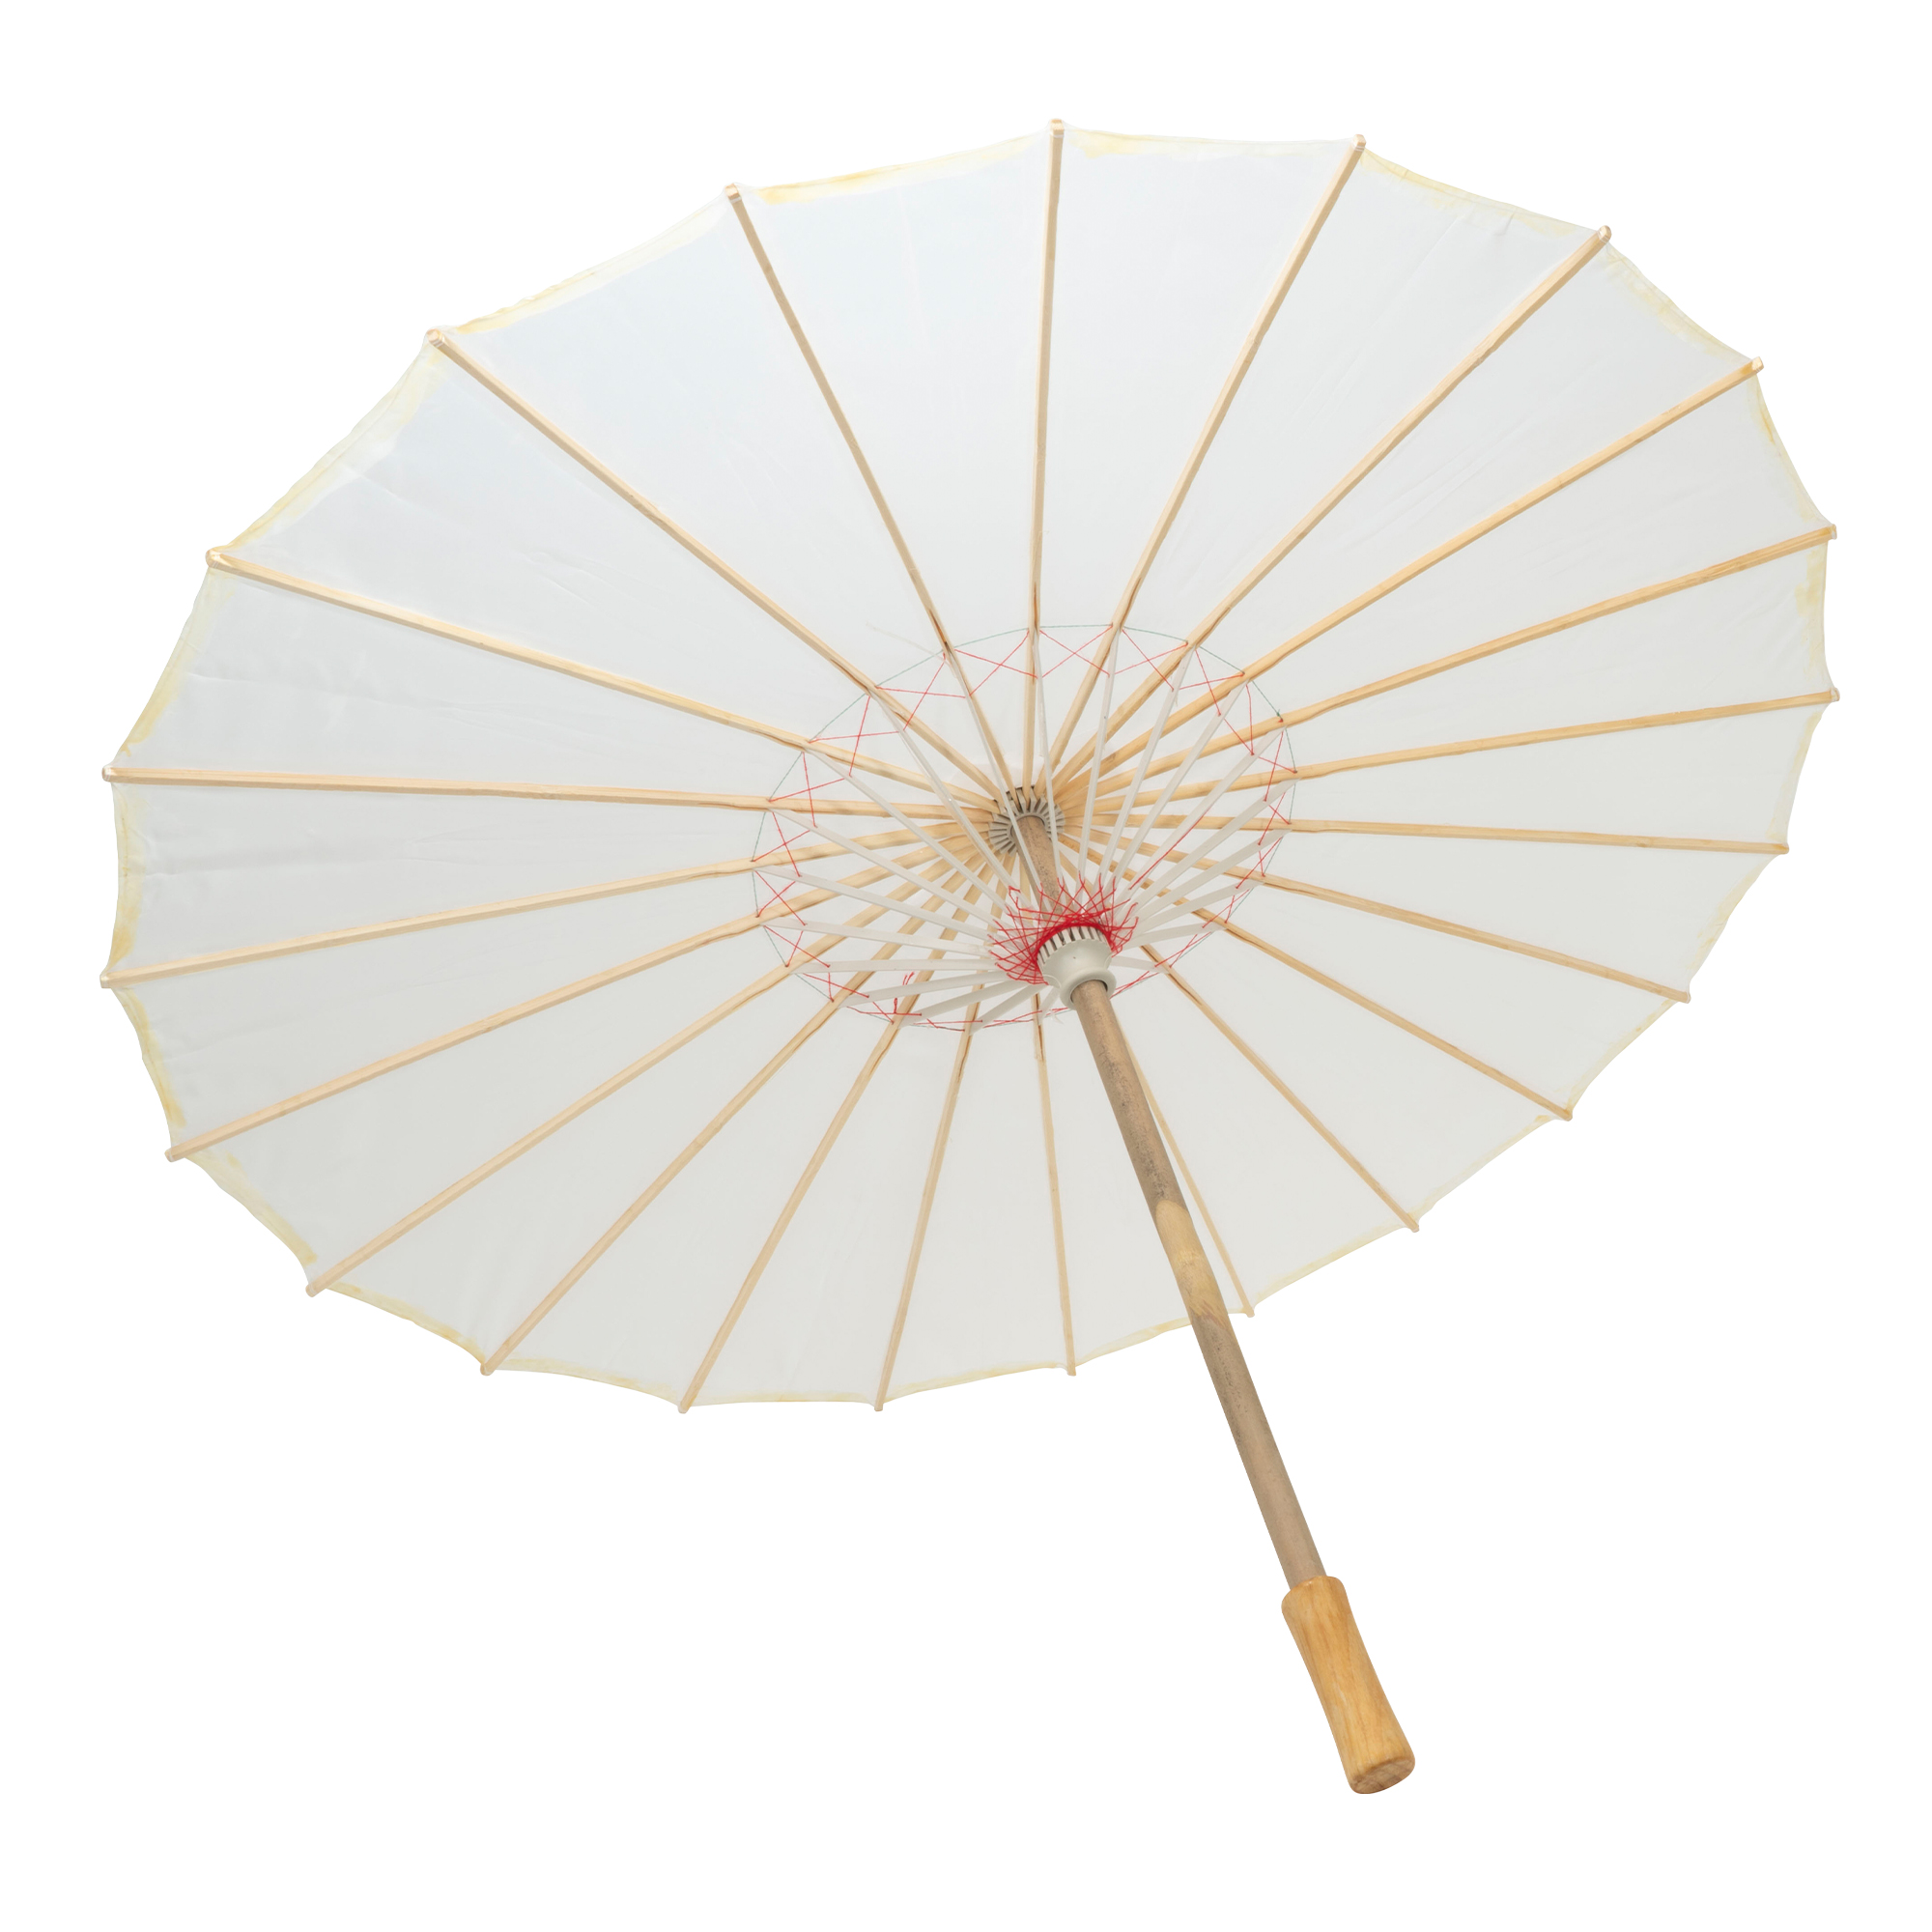 Nylon Parasol Umbrella 32" - White